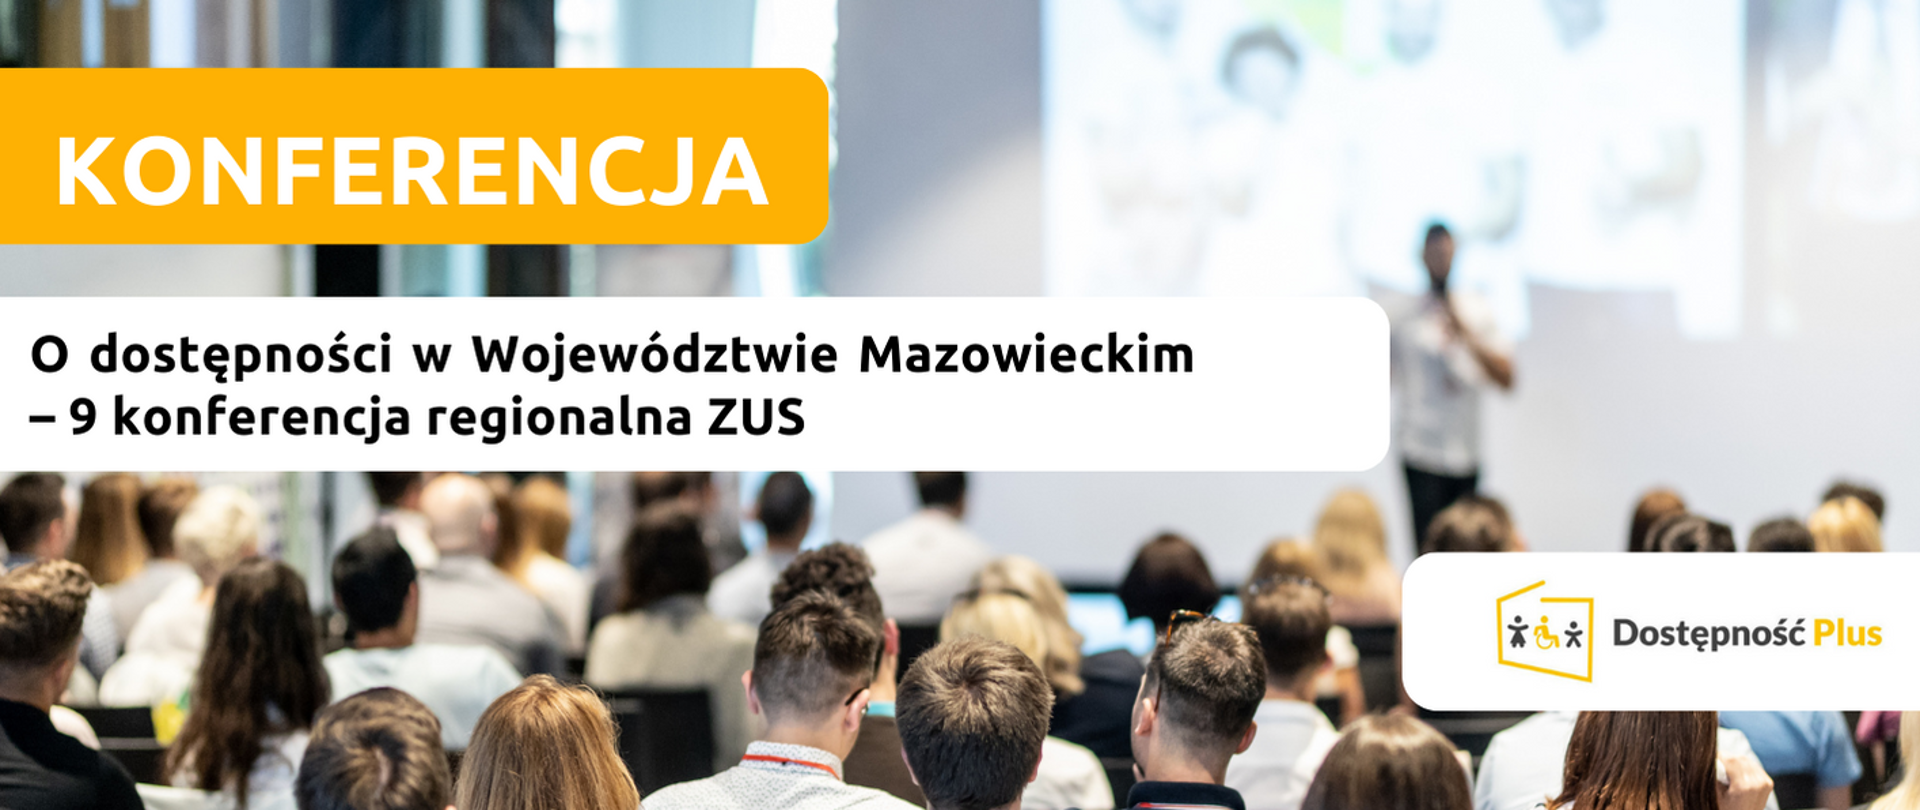 O dostępności w Województwie Mazowieckim 9 regionalna konferencja ZUS